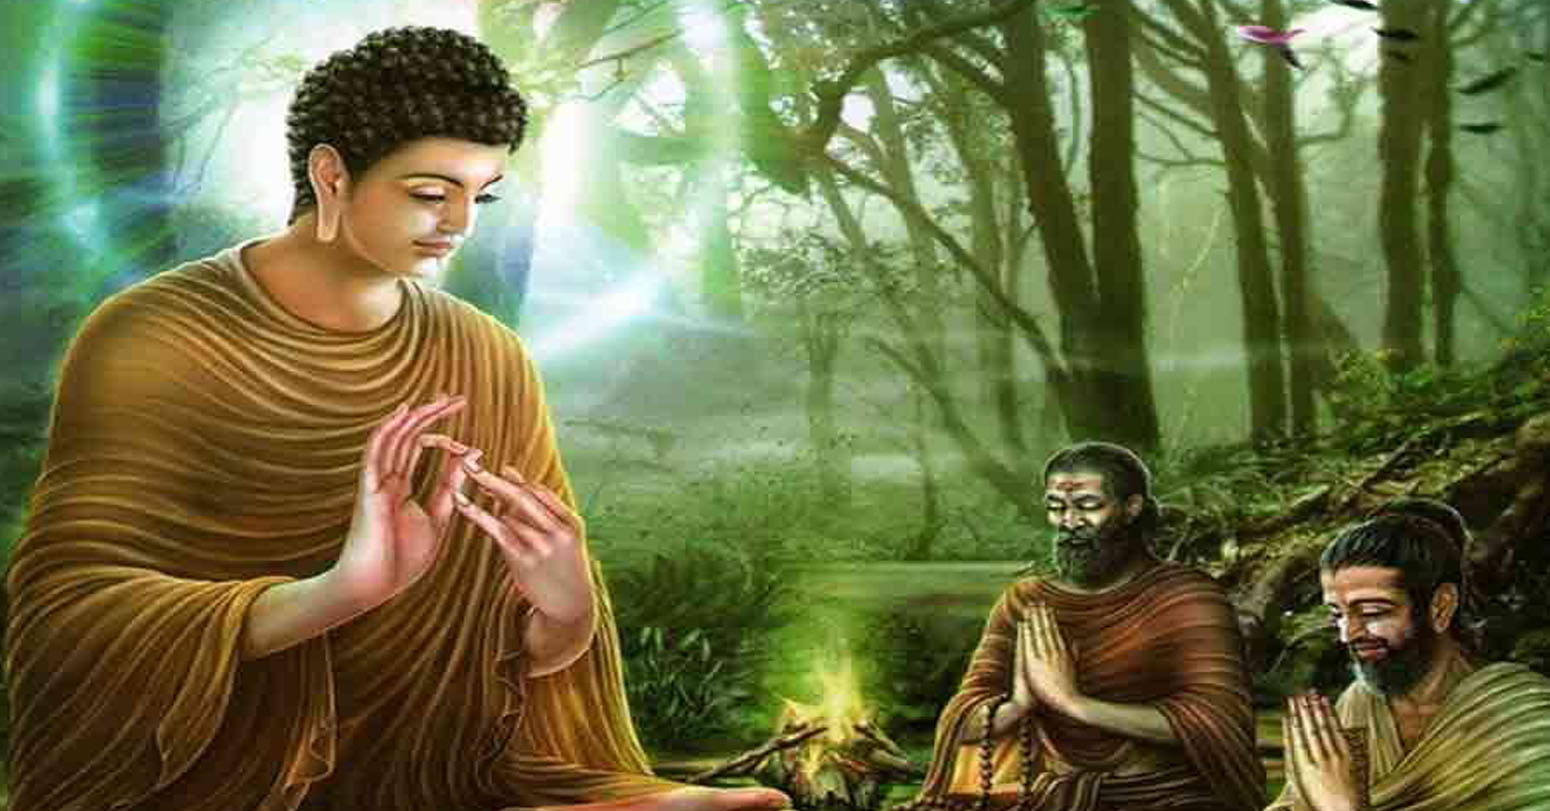 सुमेधदेखि गौतम बुद्धसम्मको दीर्घ यात्रा : बौद्ध दर्शनको आधारभूत ज्ञान